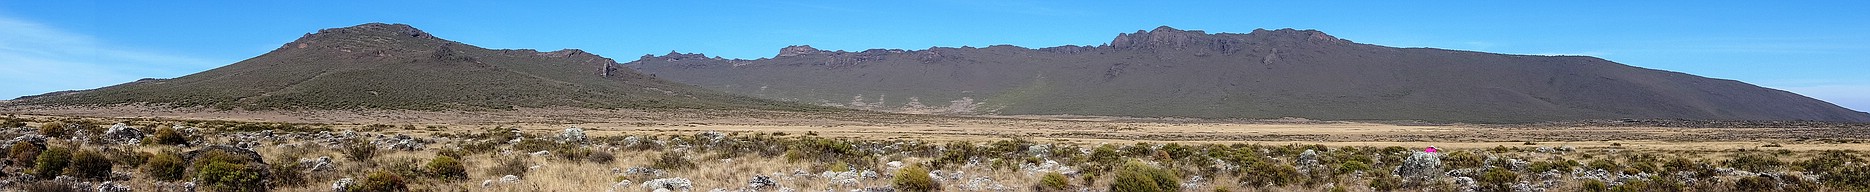 Das Shira Platau 2013.Mit dem zentralem Platzkegel - hier als dominante Erhebung auf dem Shira Plateau zu sehen.